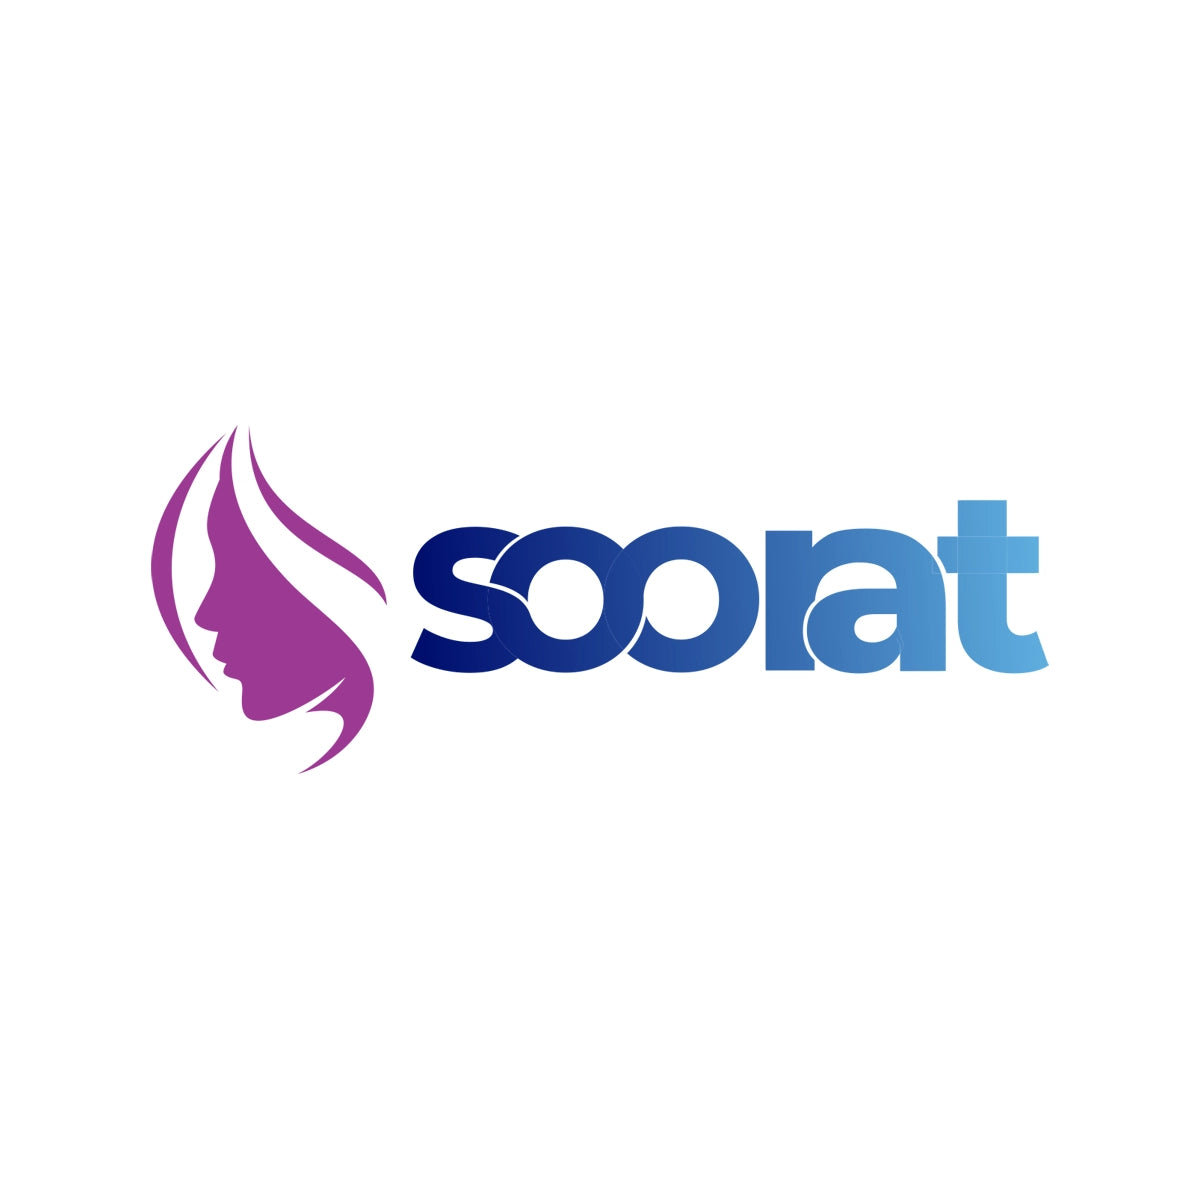 soorat.com